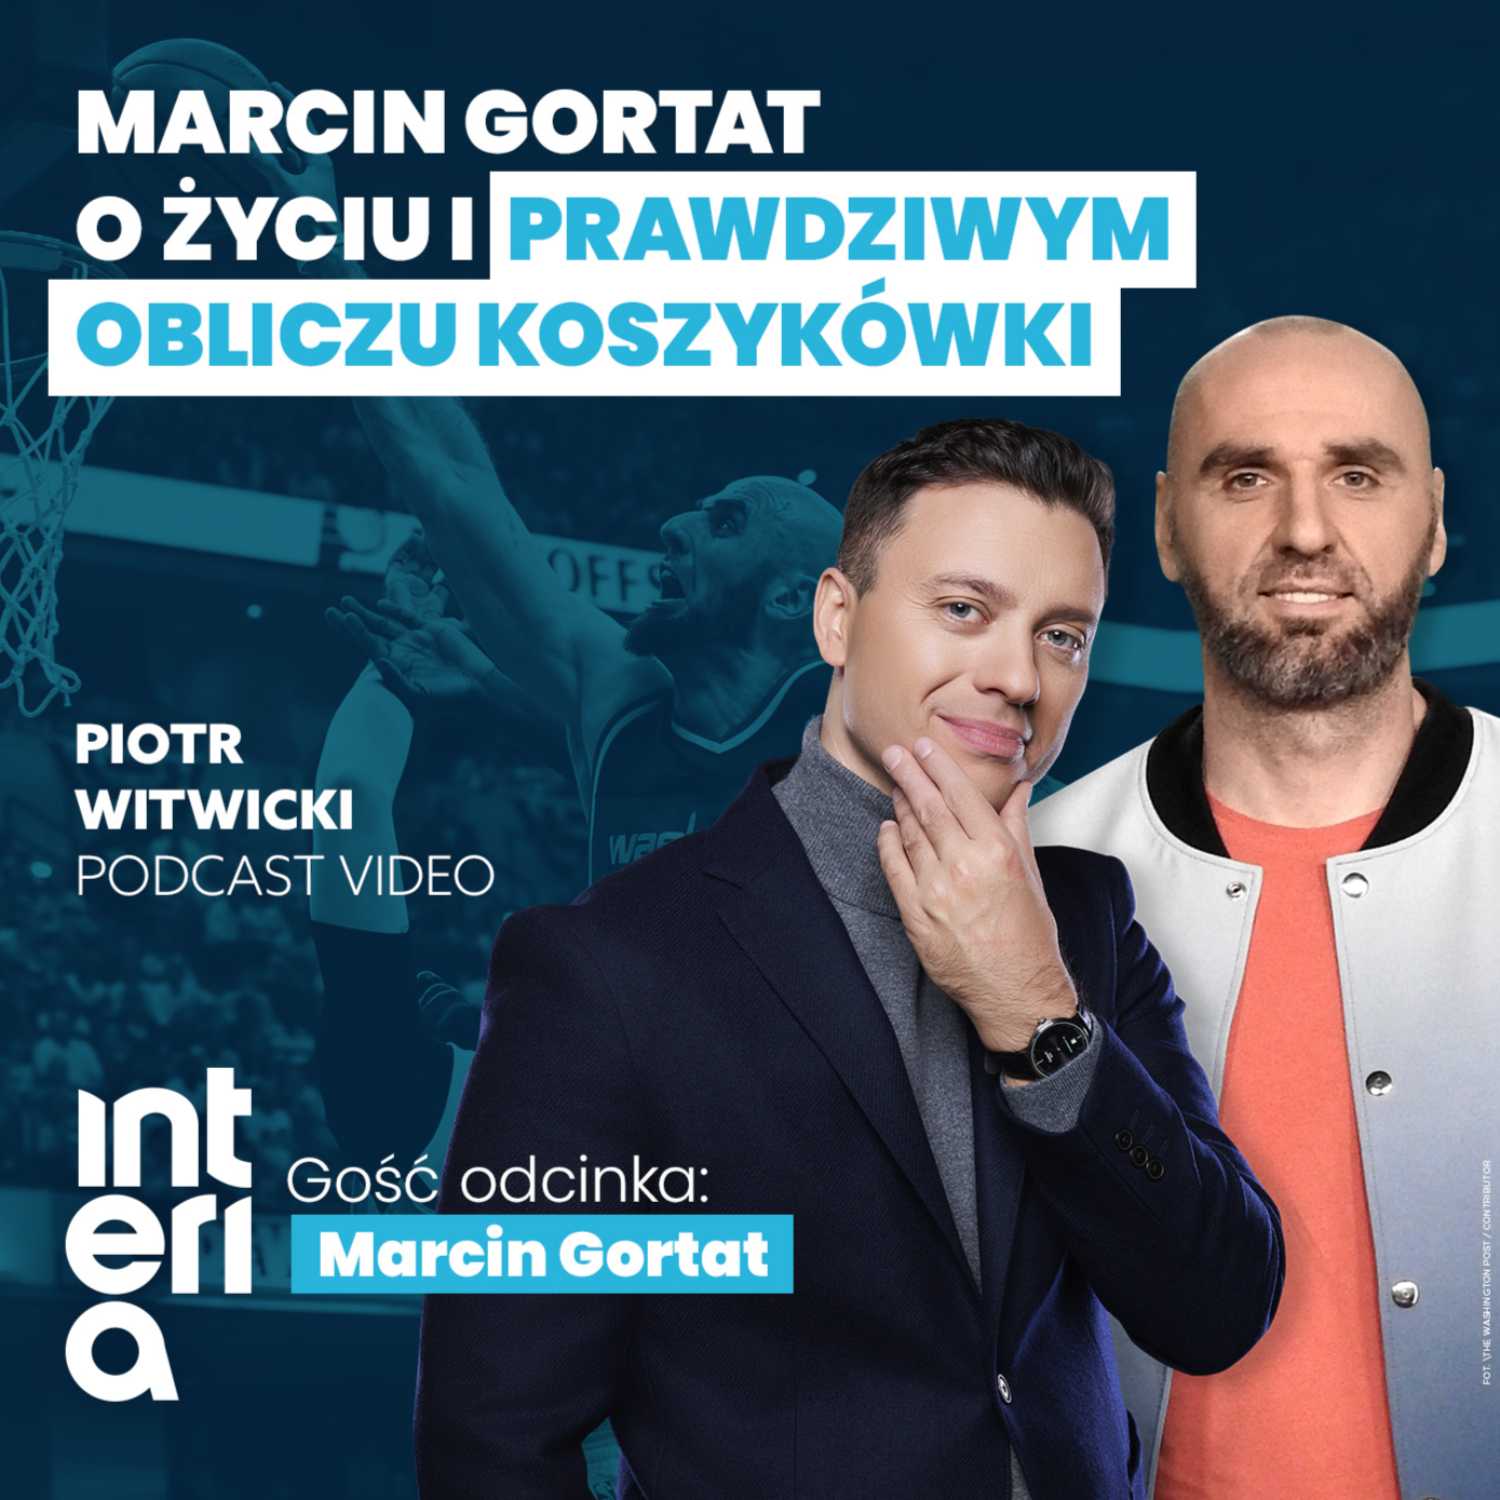 Marcin Gortat - Piotr Witwicki podcast